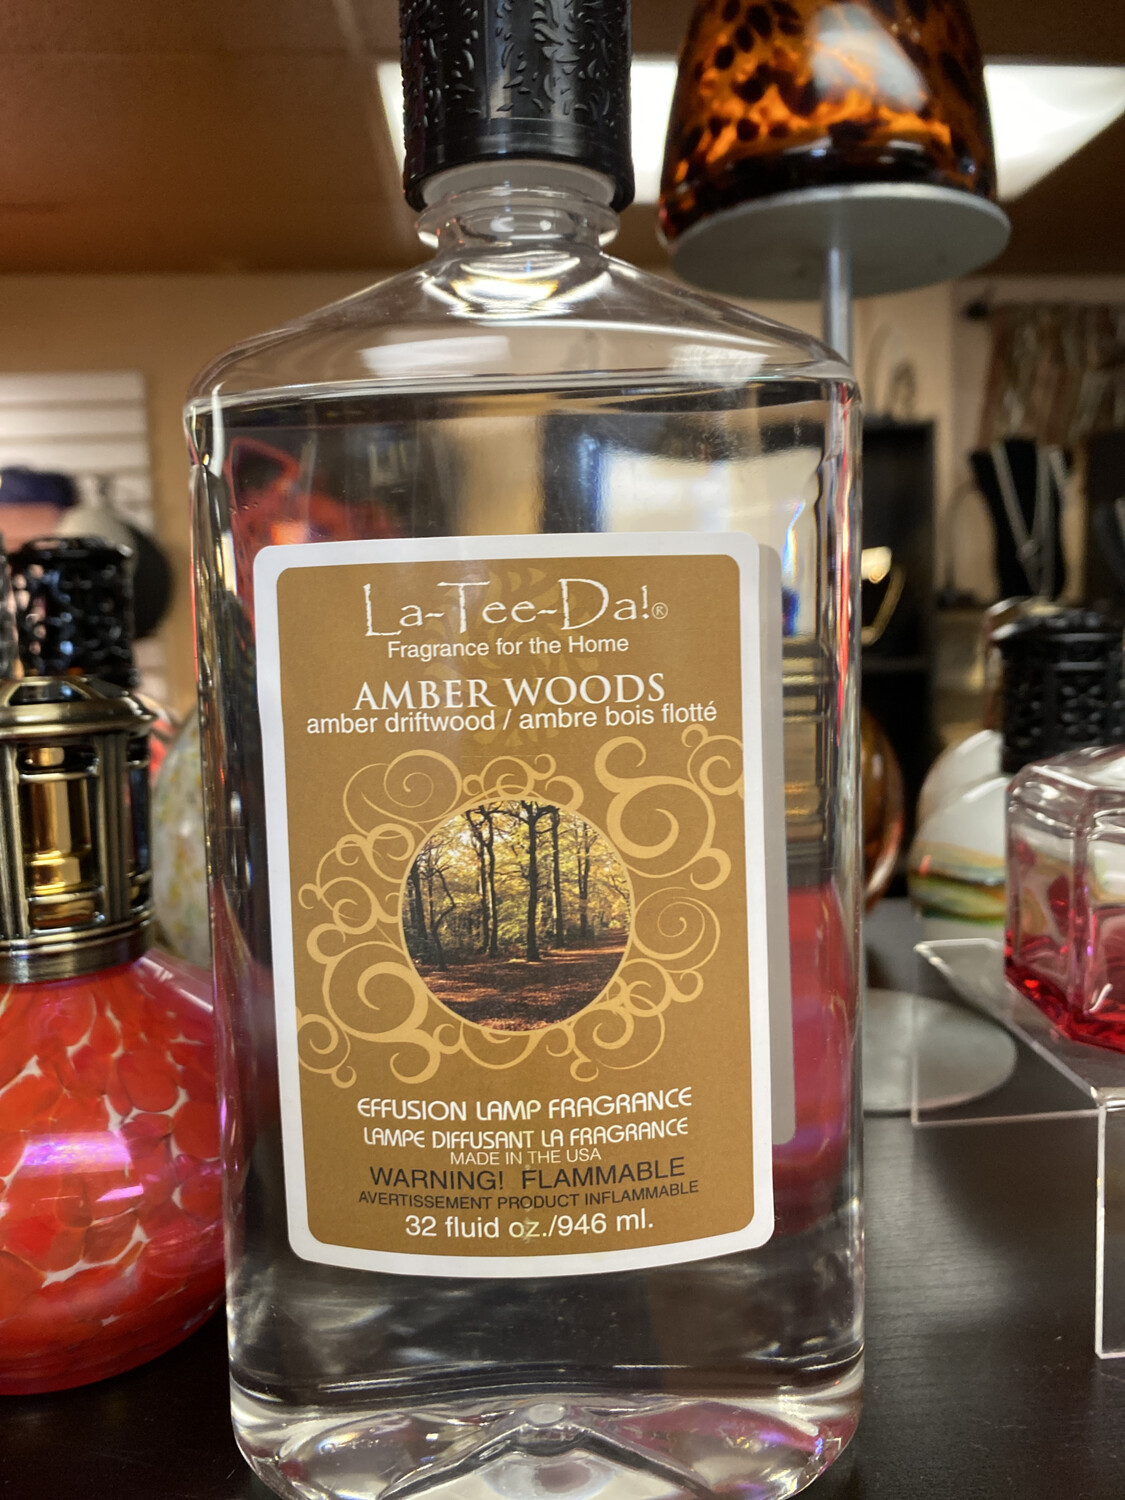 La Tee Da Amber Woods Amber Driftwood. 32 oz 